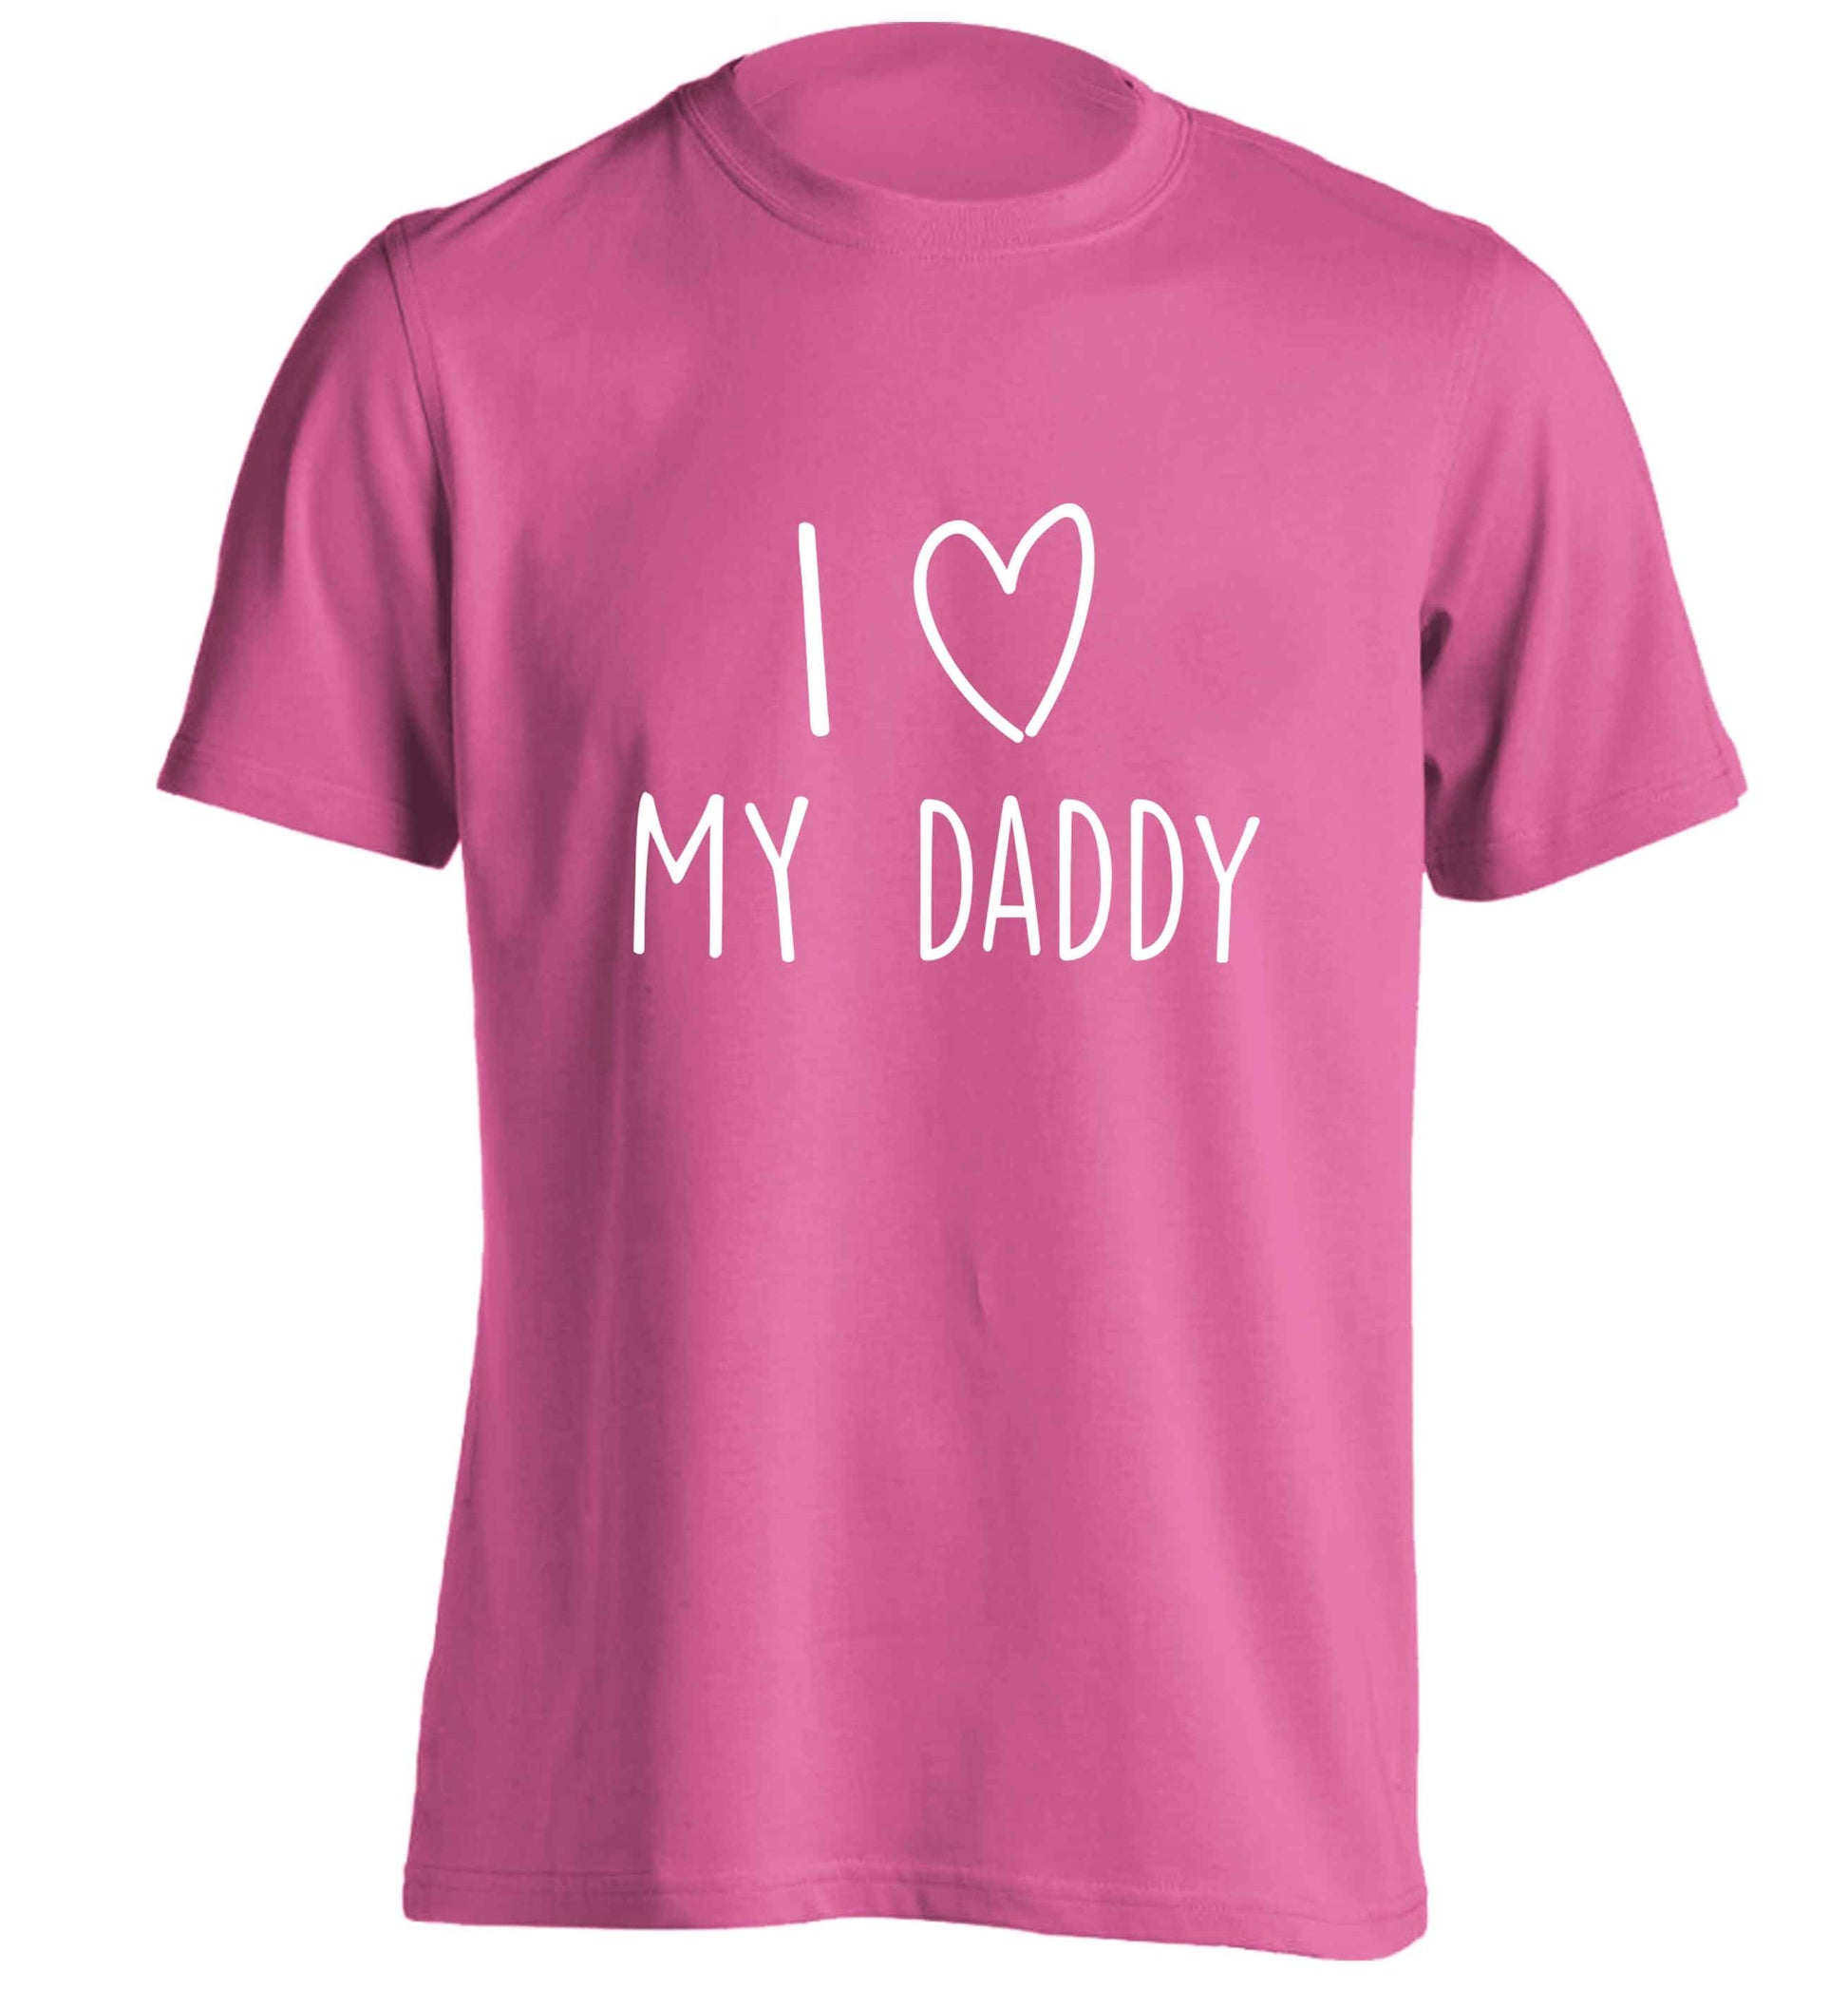 I love my daddy adults unisex pink Tshirt 2XL